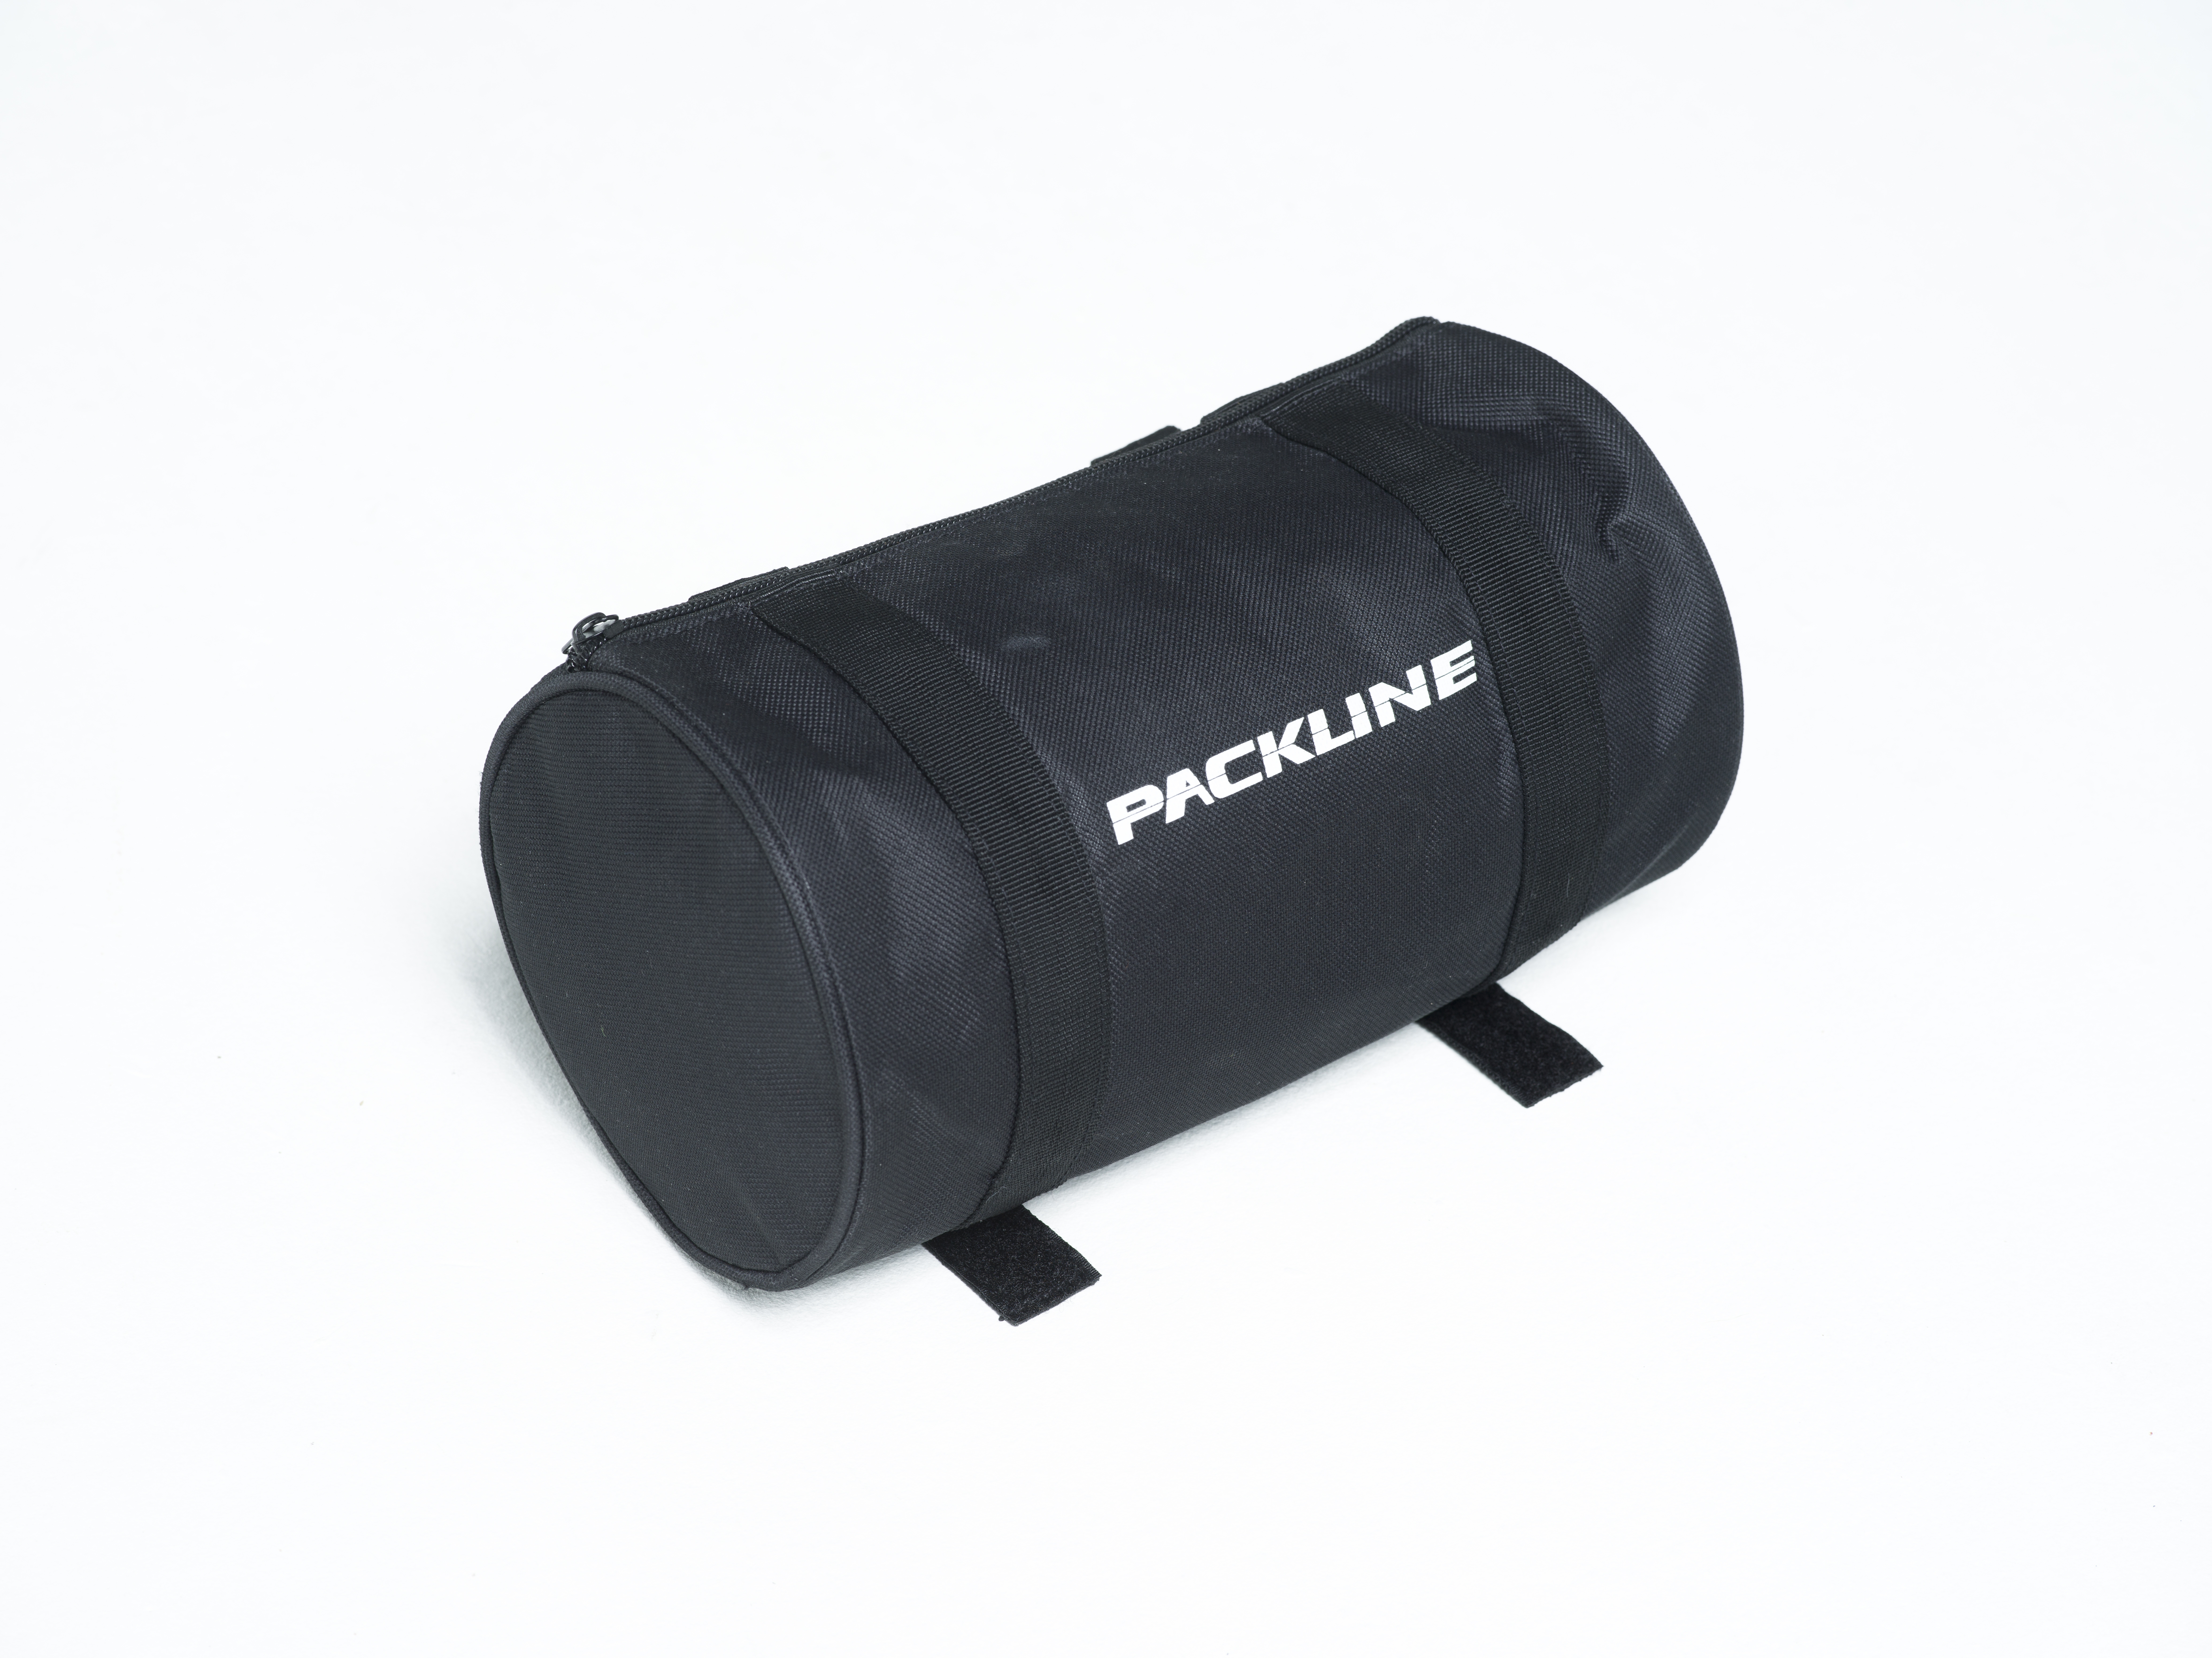 Packline | Packline